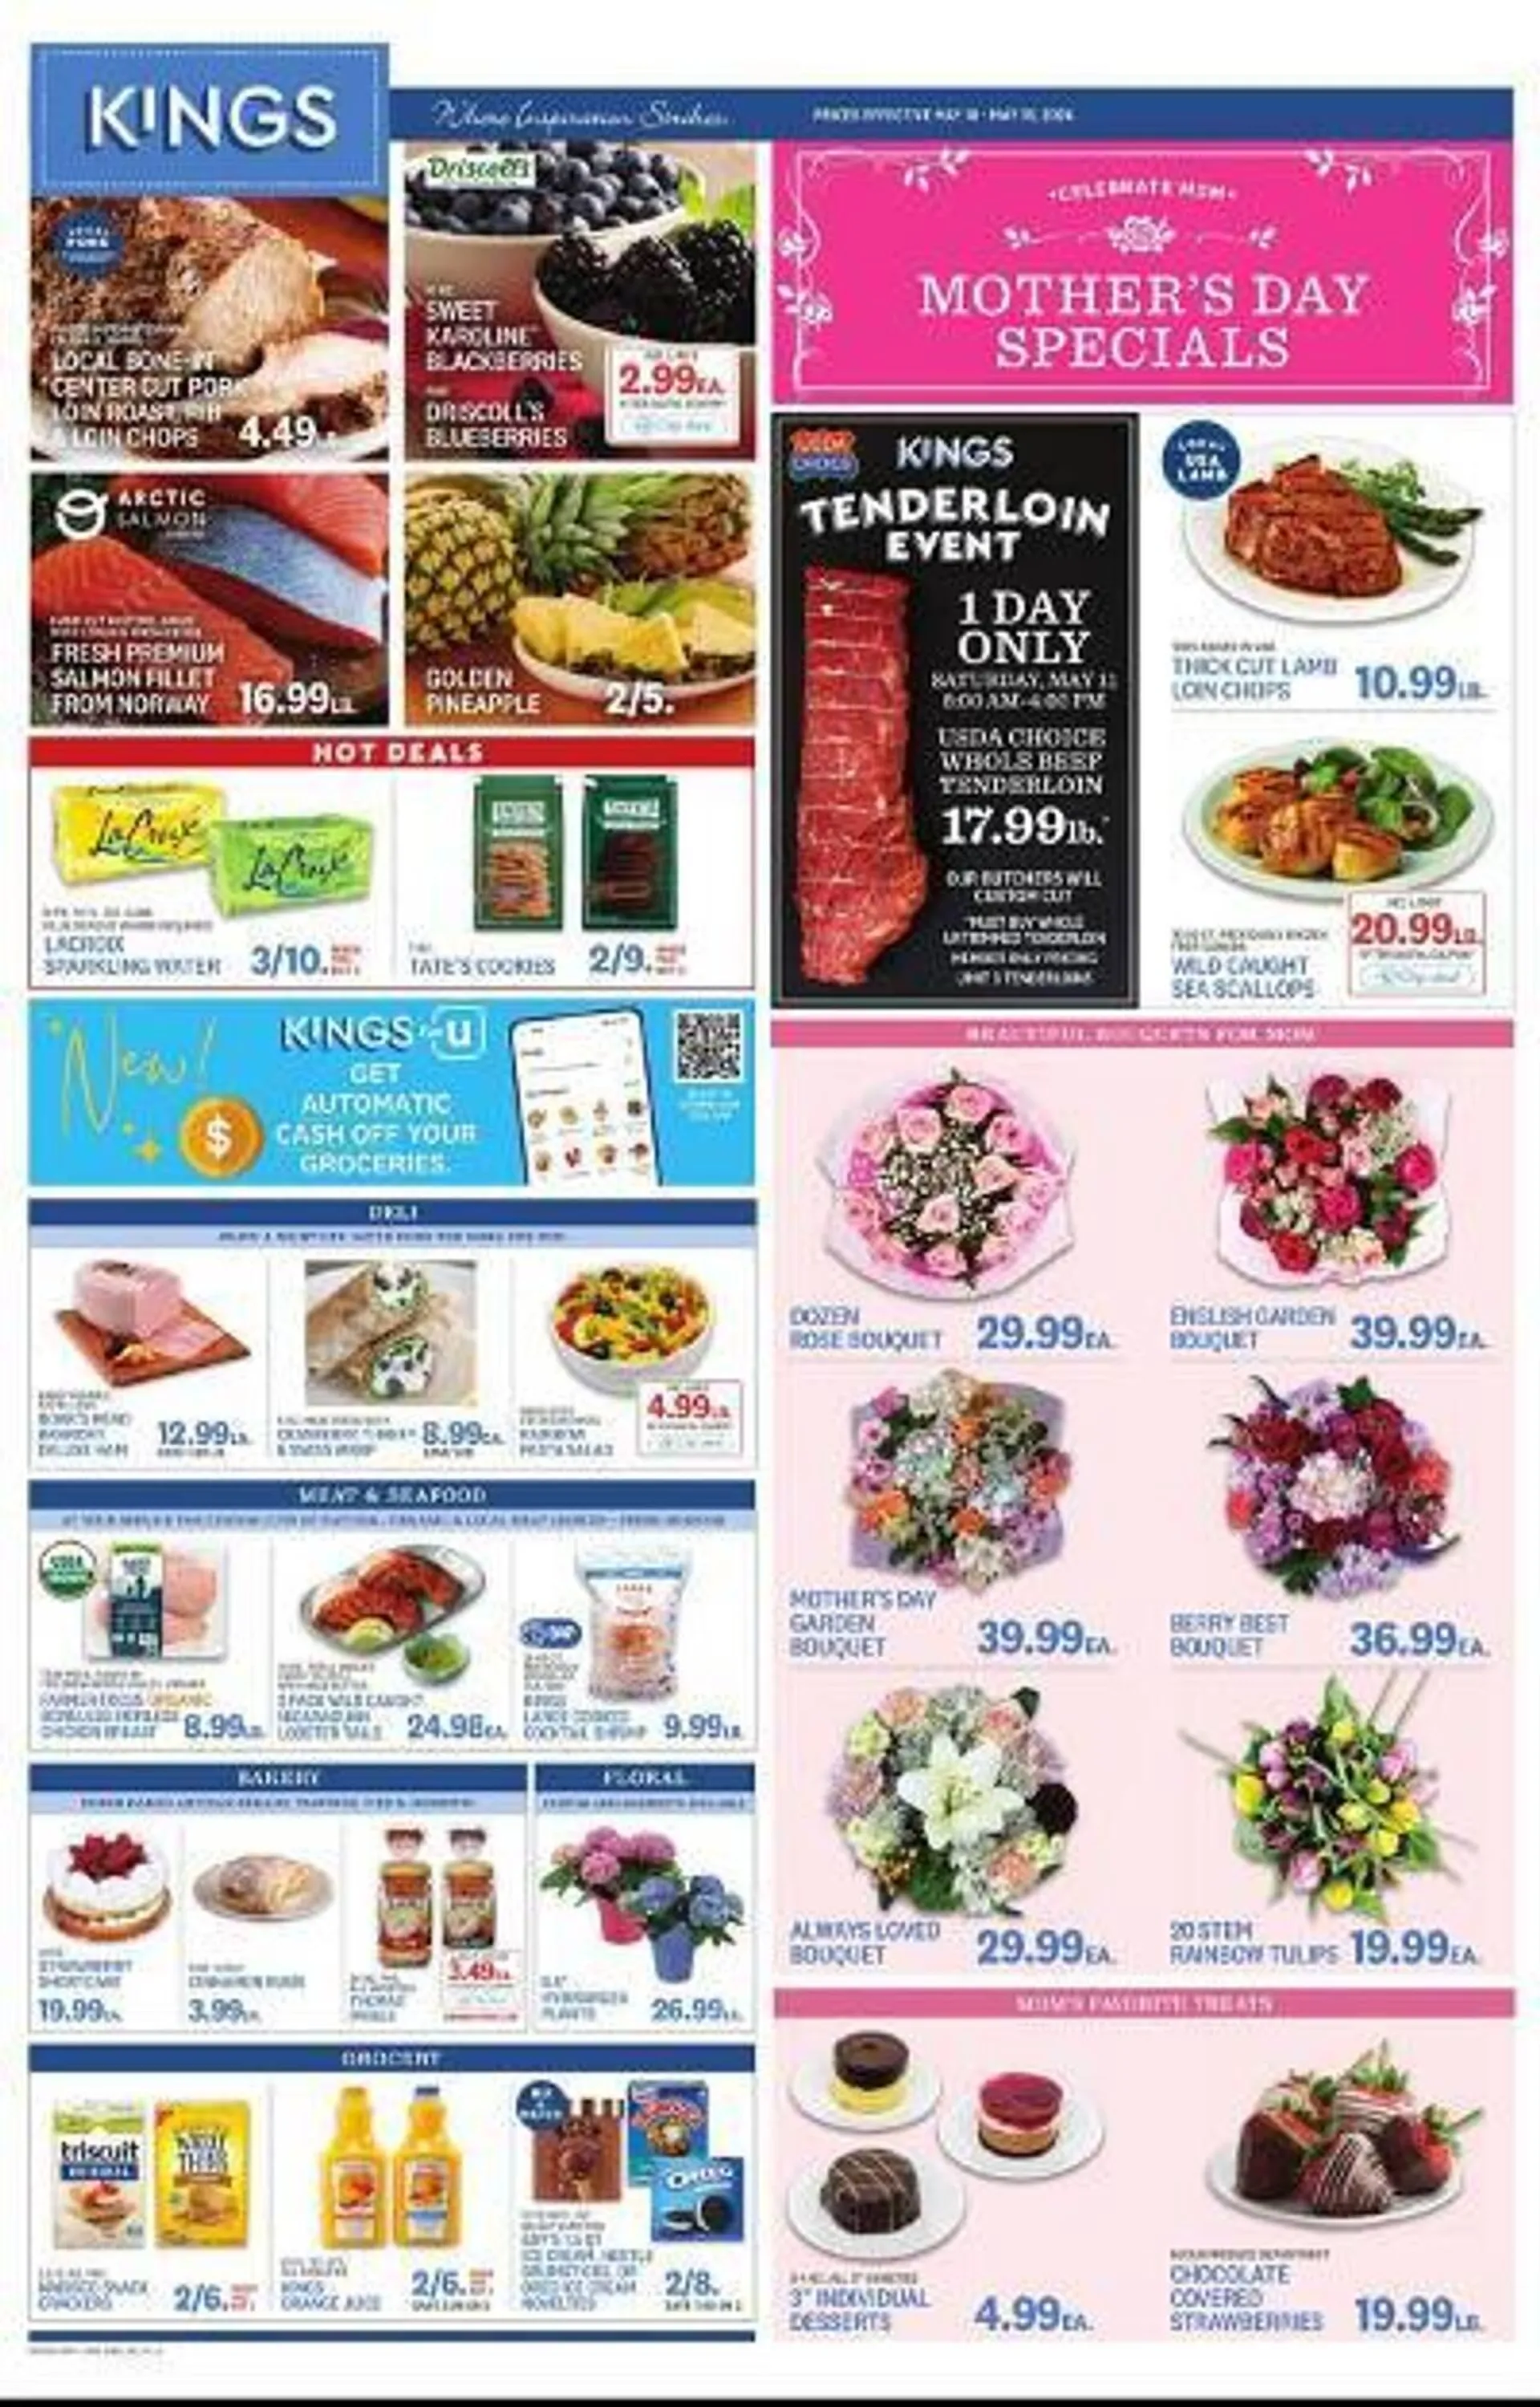 Kings Food Markets Weekly Ad - 1